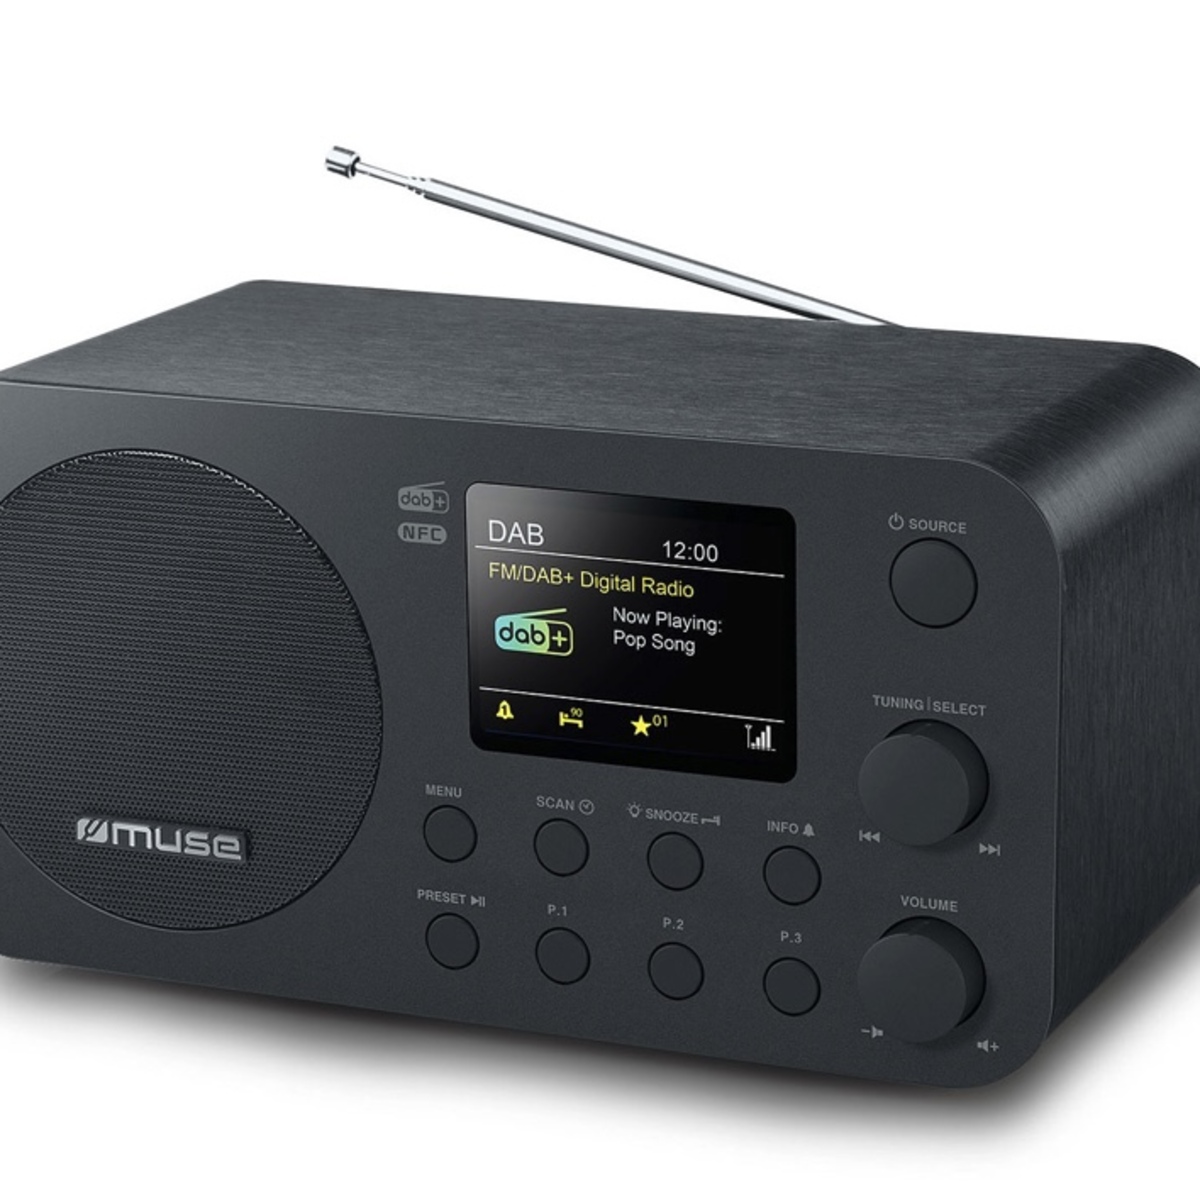 Un nouveau radio-réveil Bluetooth FM/DAB + chez Muse